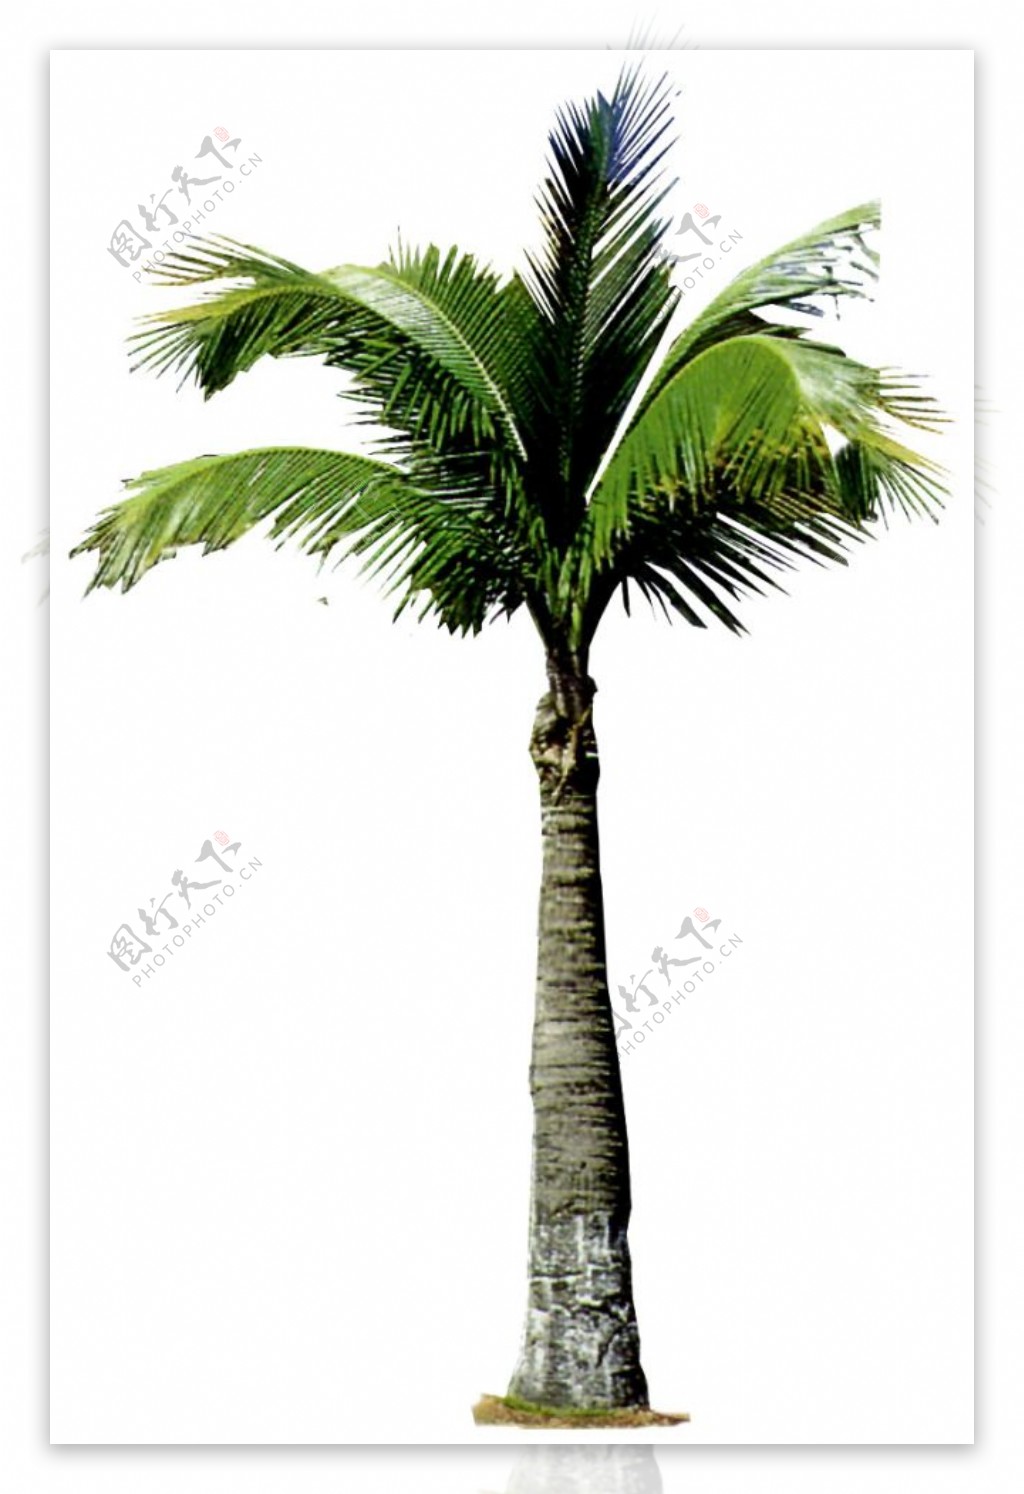 3D室外效果图环境素材矮椰子树